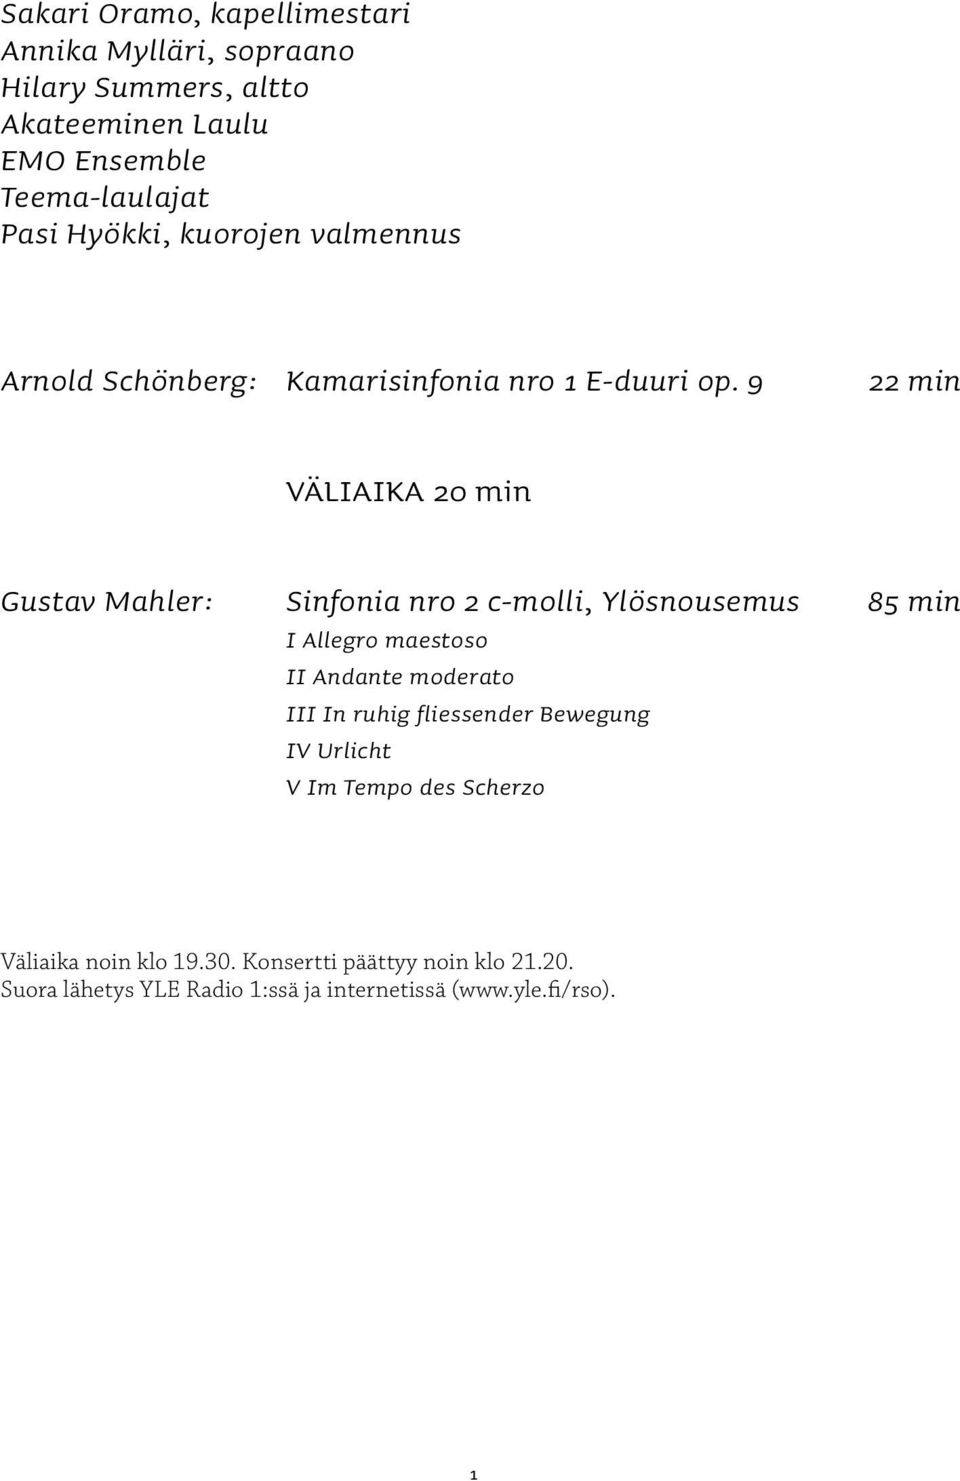 9 22 min VÄLIAIKA 20 min Gustav Mahler: Sinfonia nro 2 c-molli, Ylösnousemus 85 min I Allegro maestoso II Andante moderato III In